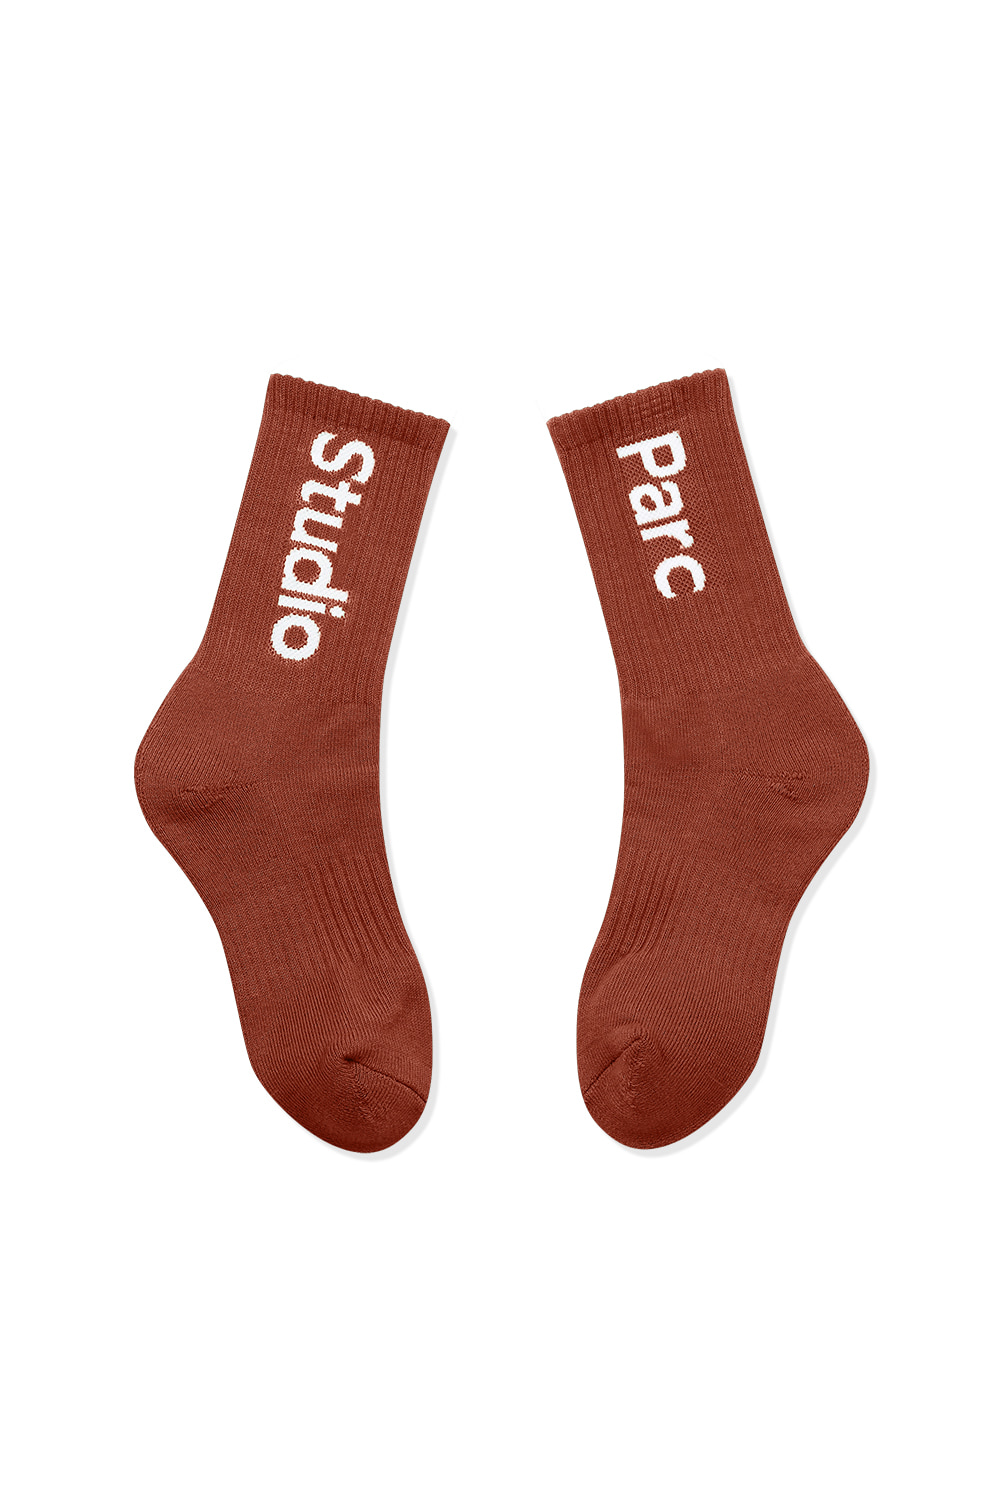 (UNI) Sceaux Socks 2_Brown